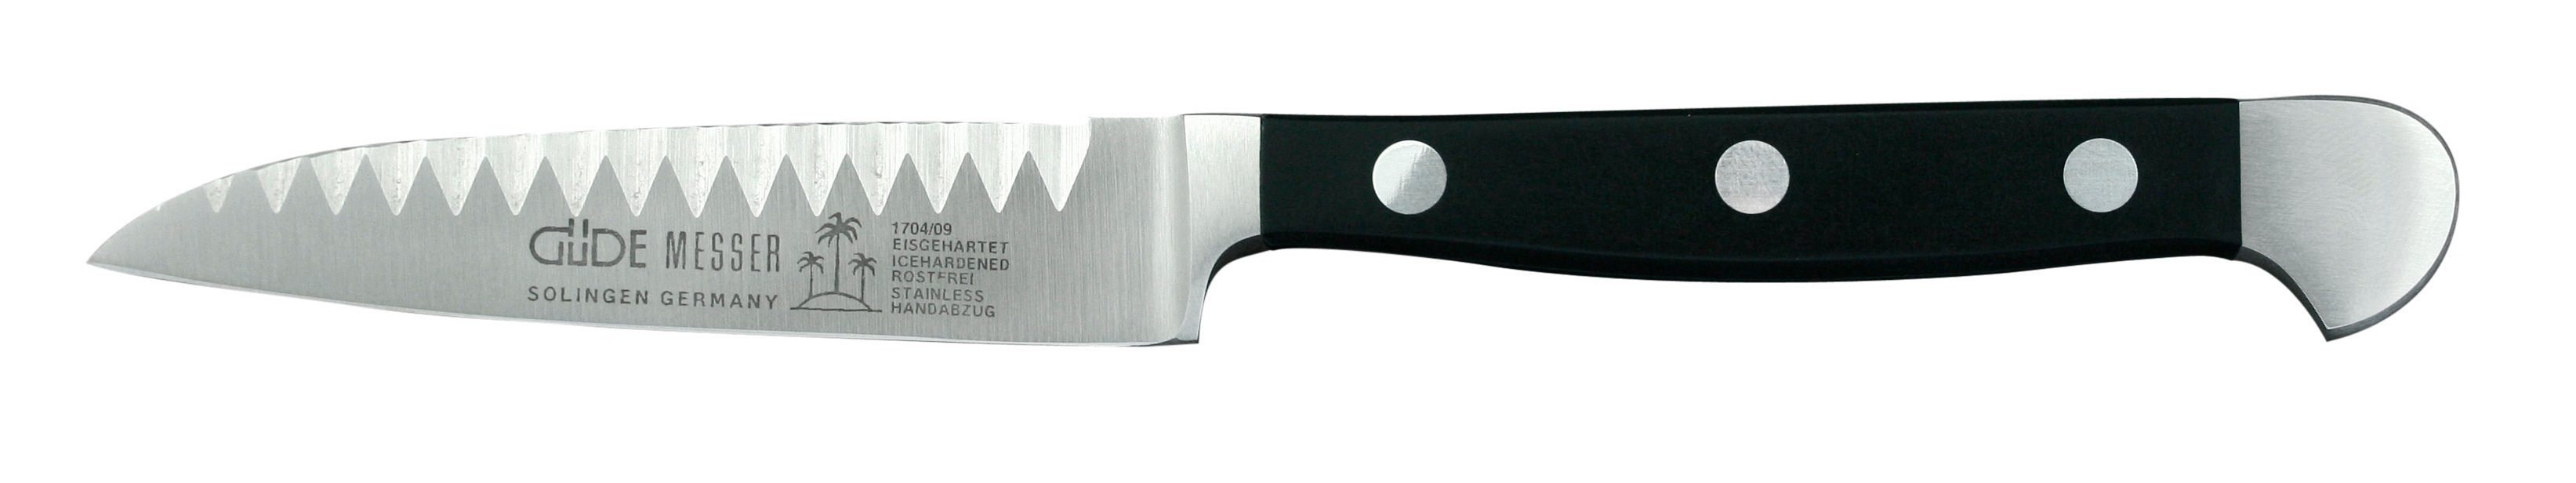 CVM-Messerstahl Schale Buntschneidemesser Messerstahl, Güde Solingen Griffschalen Alpha, Hostaform cm 9 - Messer -